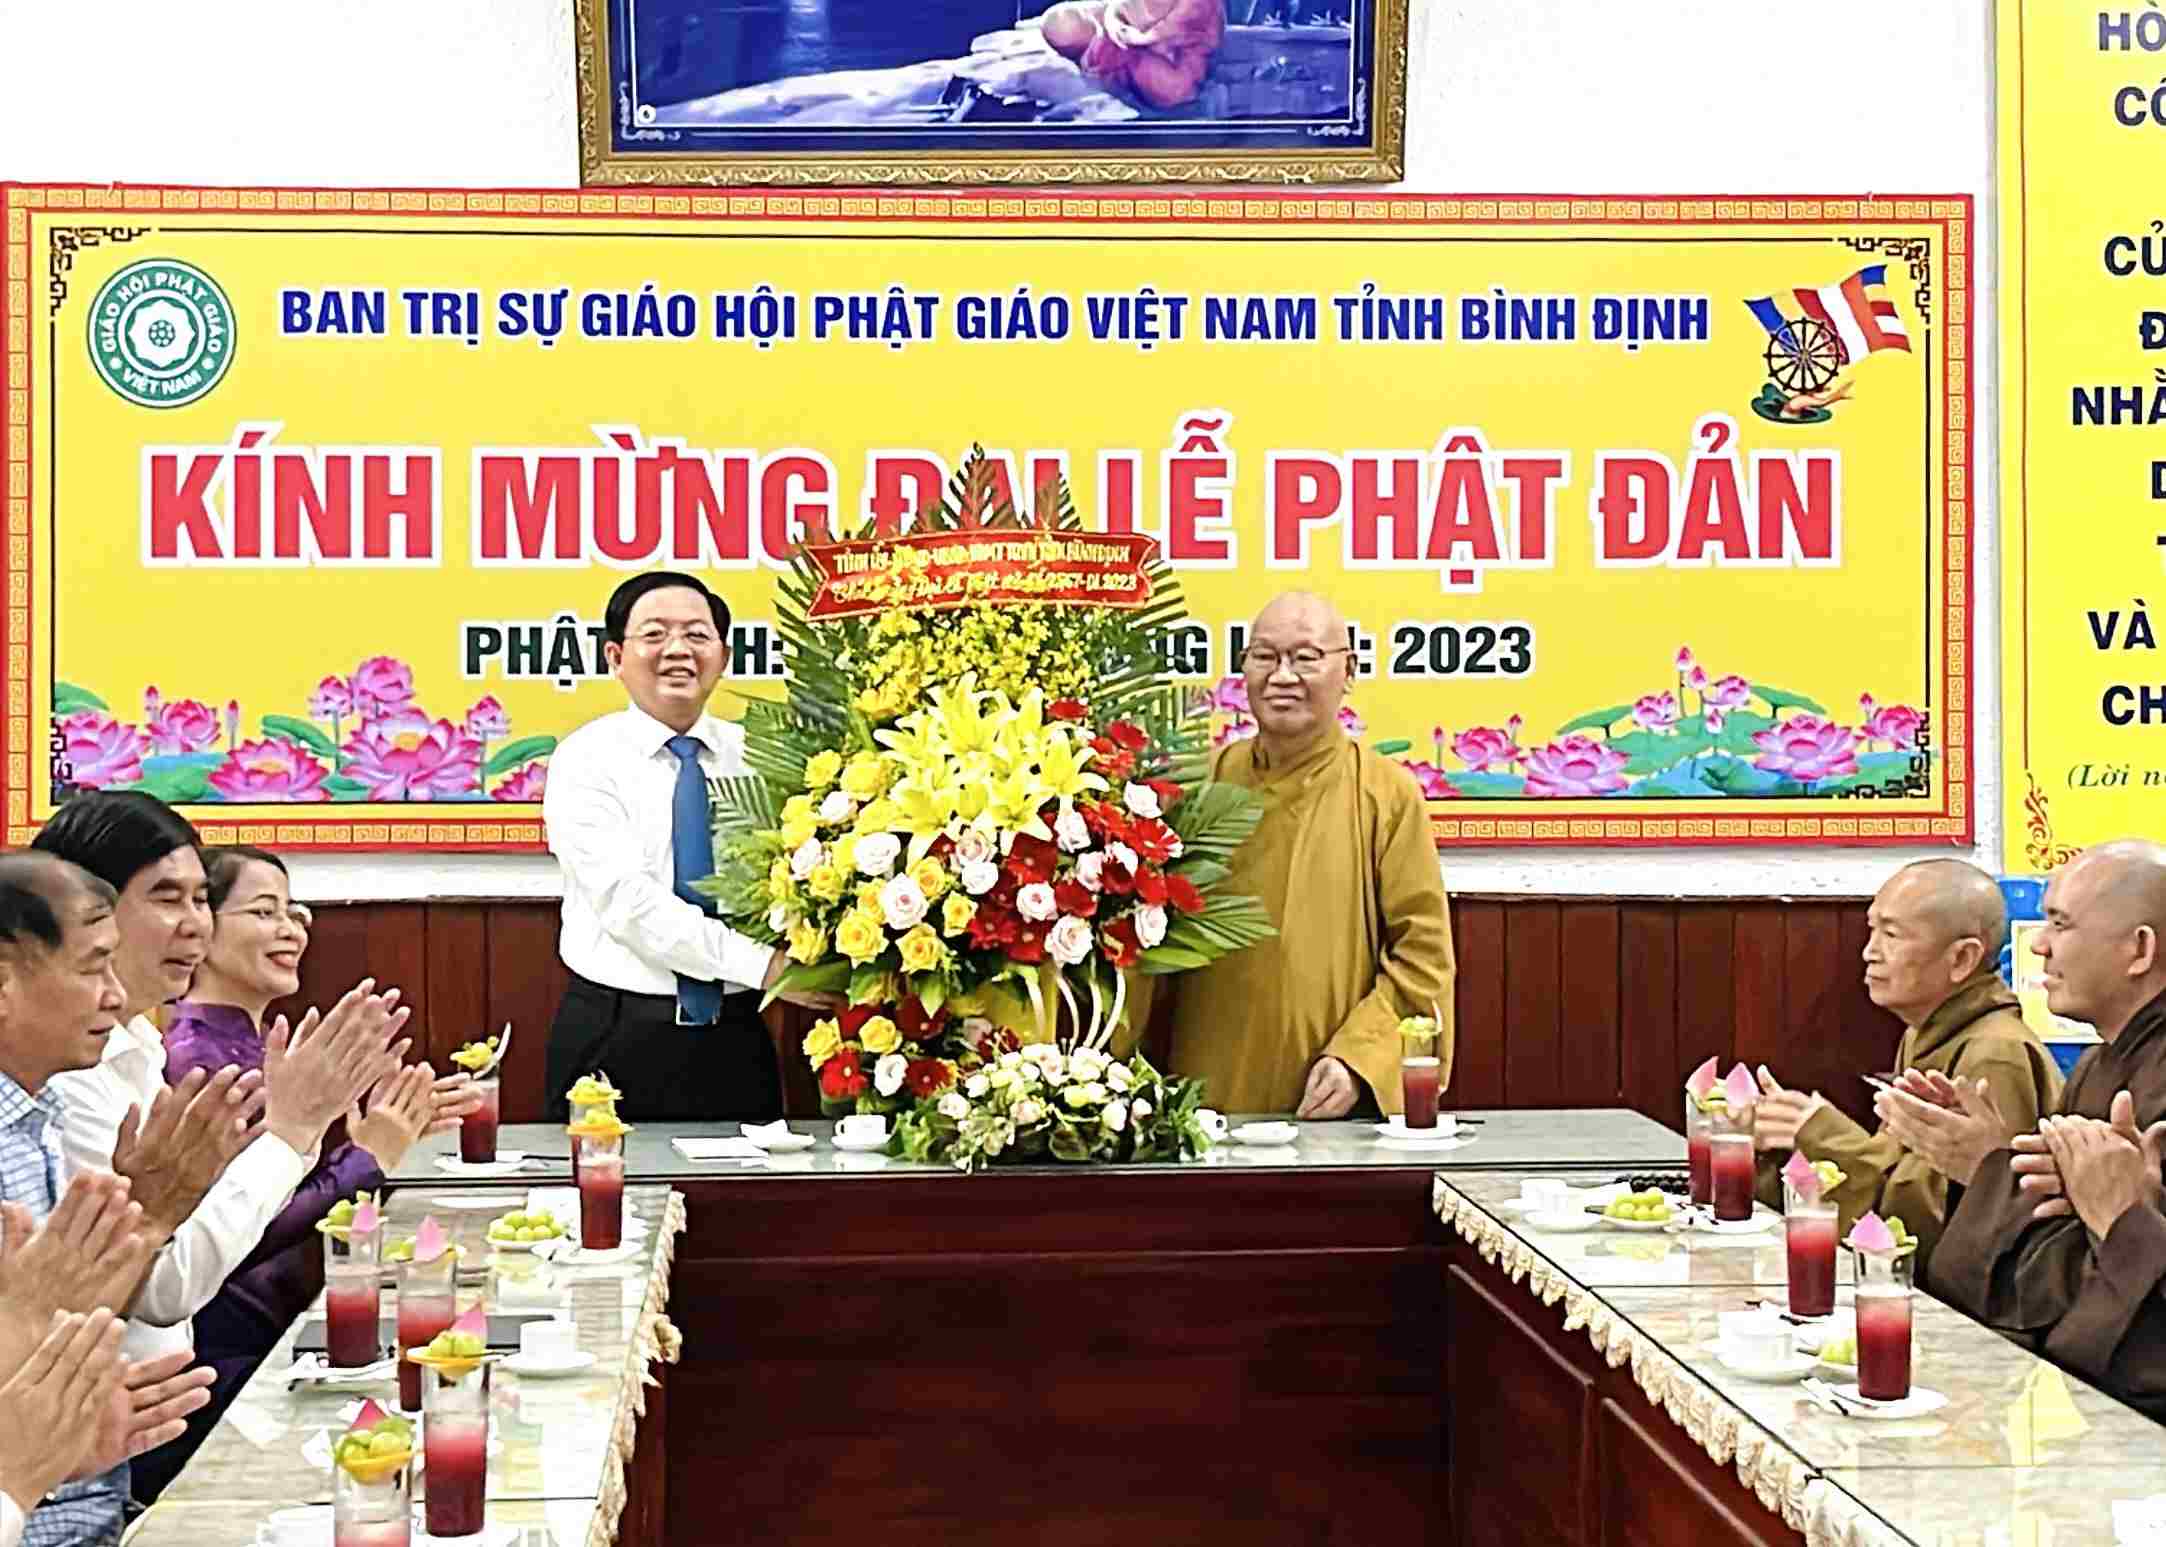 Lãnh đạo chính quyền tỉnh thăm và chúc mừng Phật đản tới Ban Trị sự Phật giáo tỉnh Bình Định